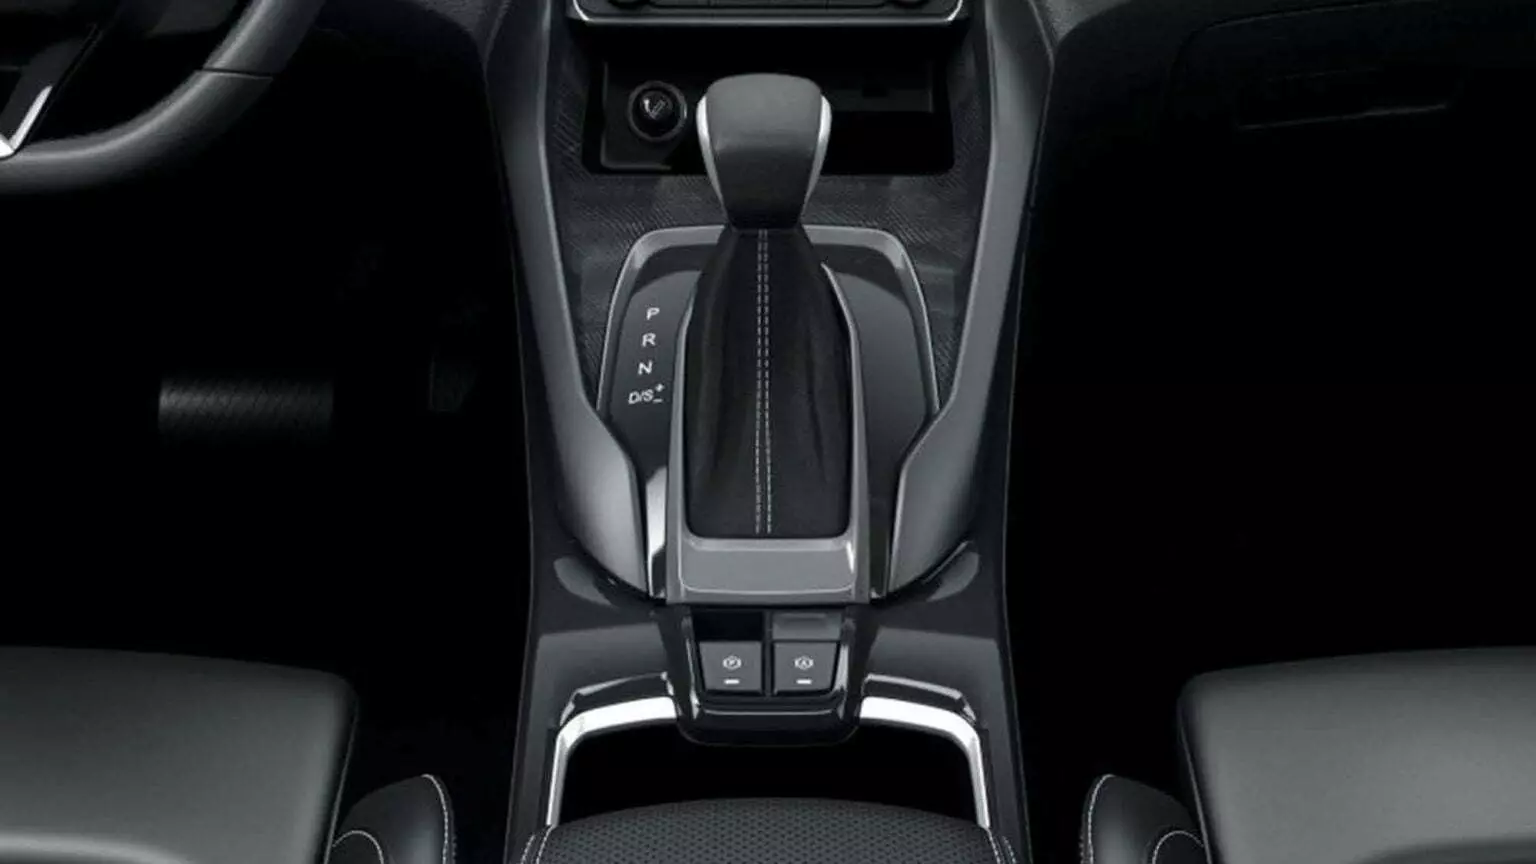 Transmisión automática de doble embrague de 7 velocidades para máxima relación rendimiento/calidad en la van Maxus G50